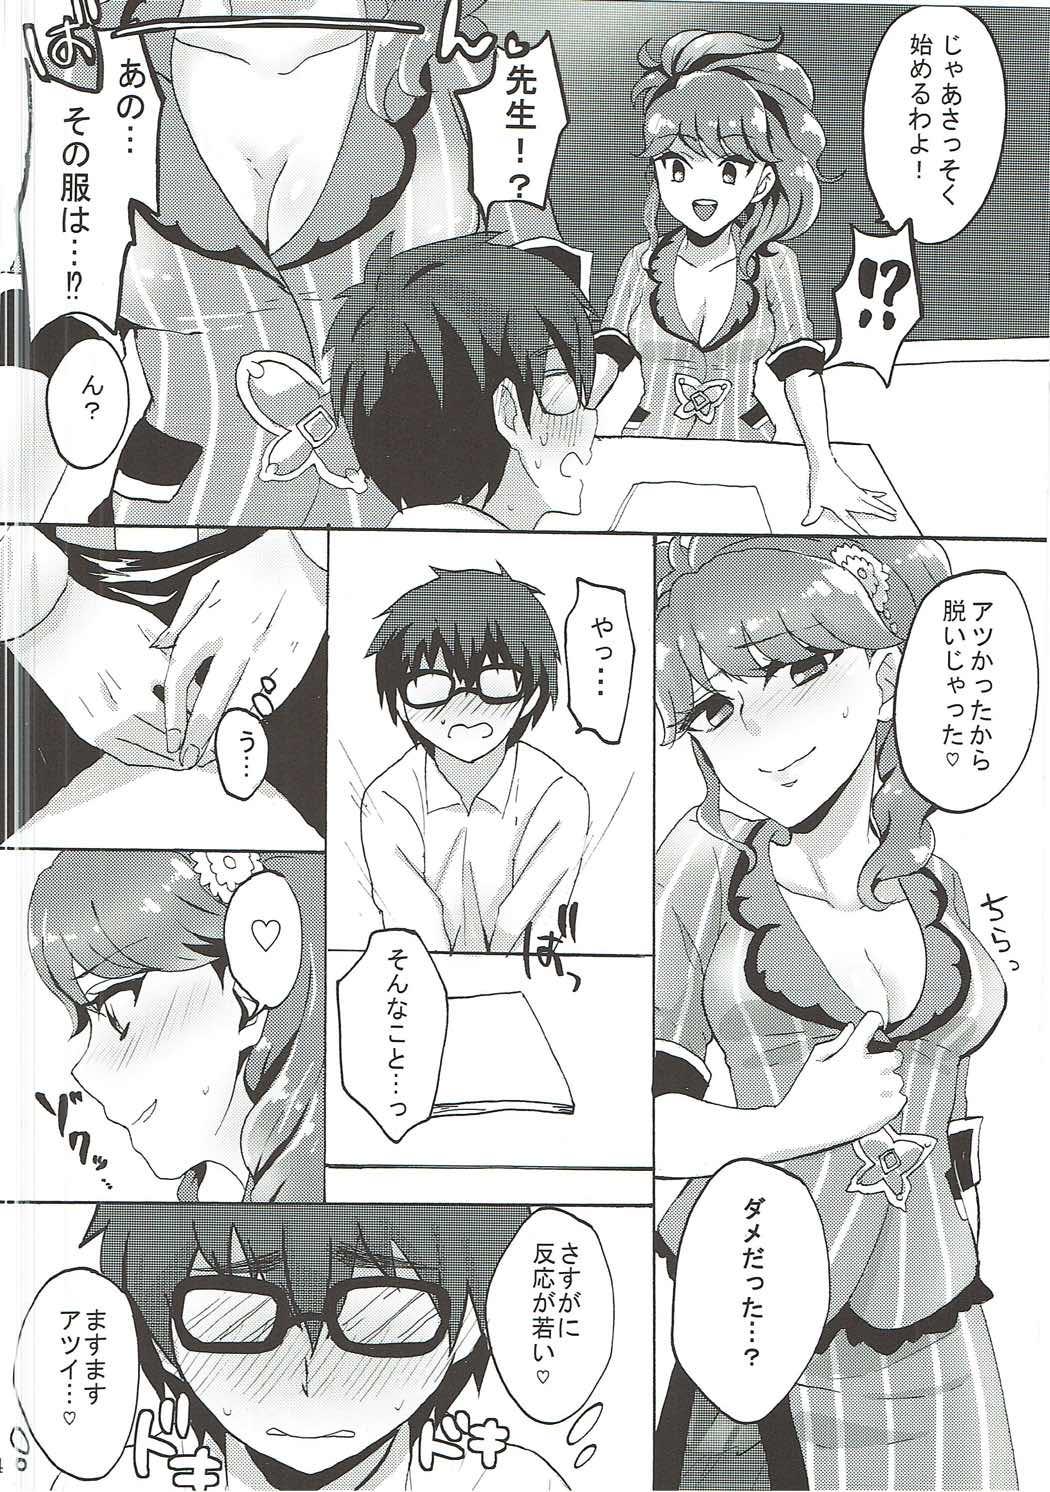 Puba Oshiete! Aikatsu Sensei - Aikatsu Free Blow Job Porn - Page 5